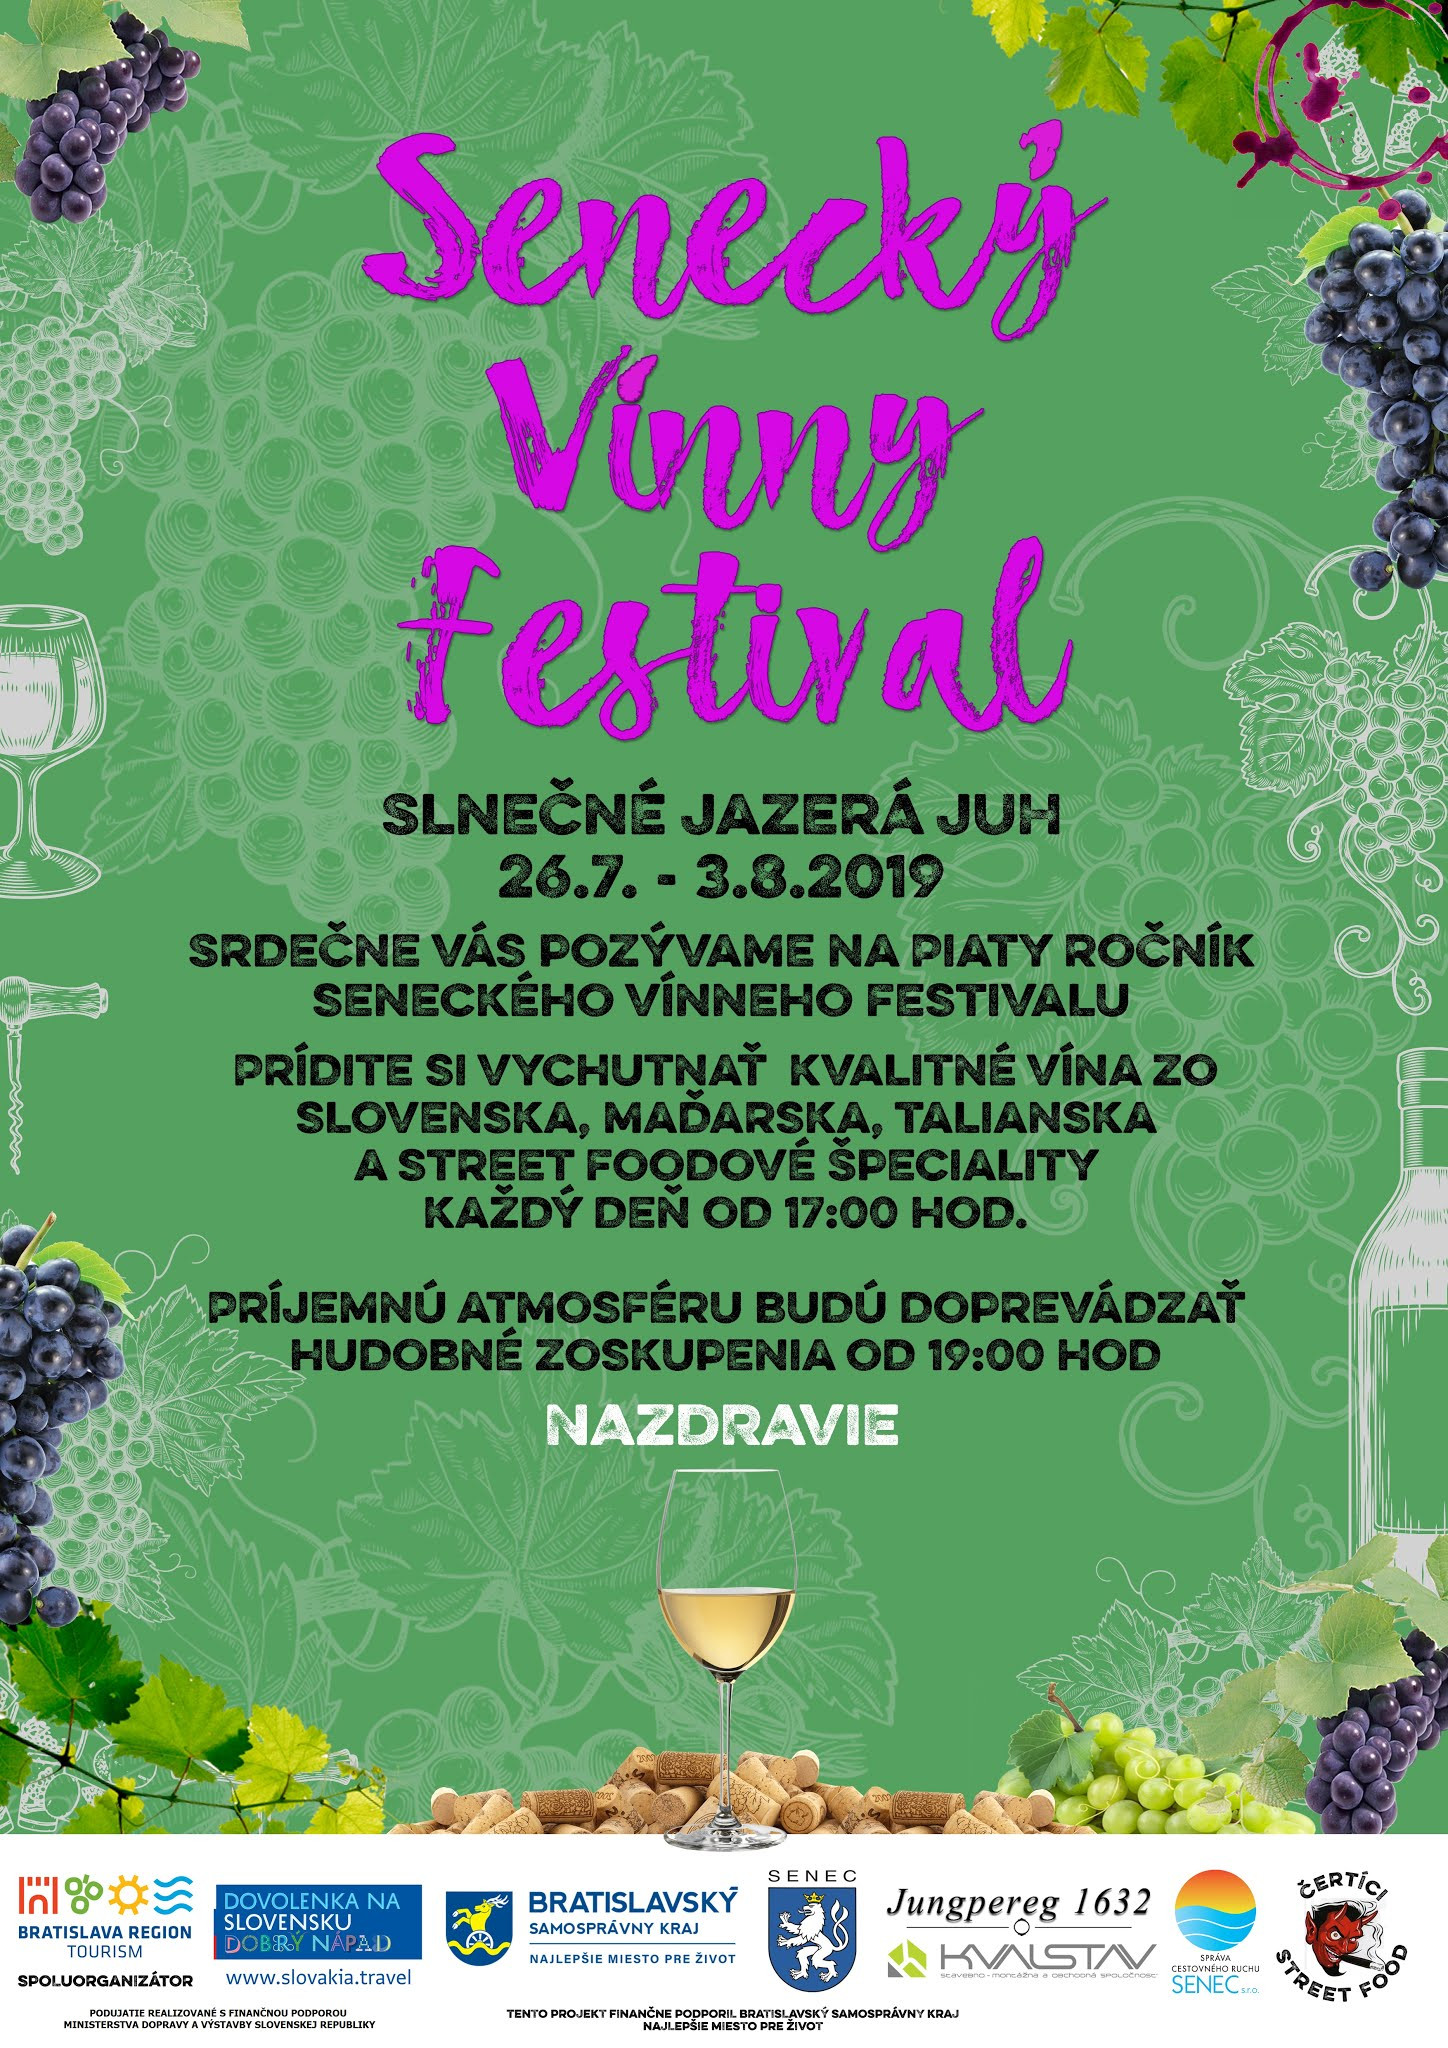 Senecký vínny festival 2019 (26.7. - 3.8.2019)